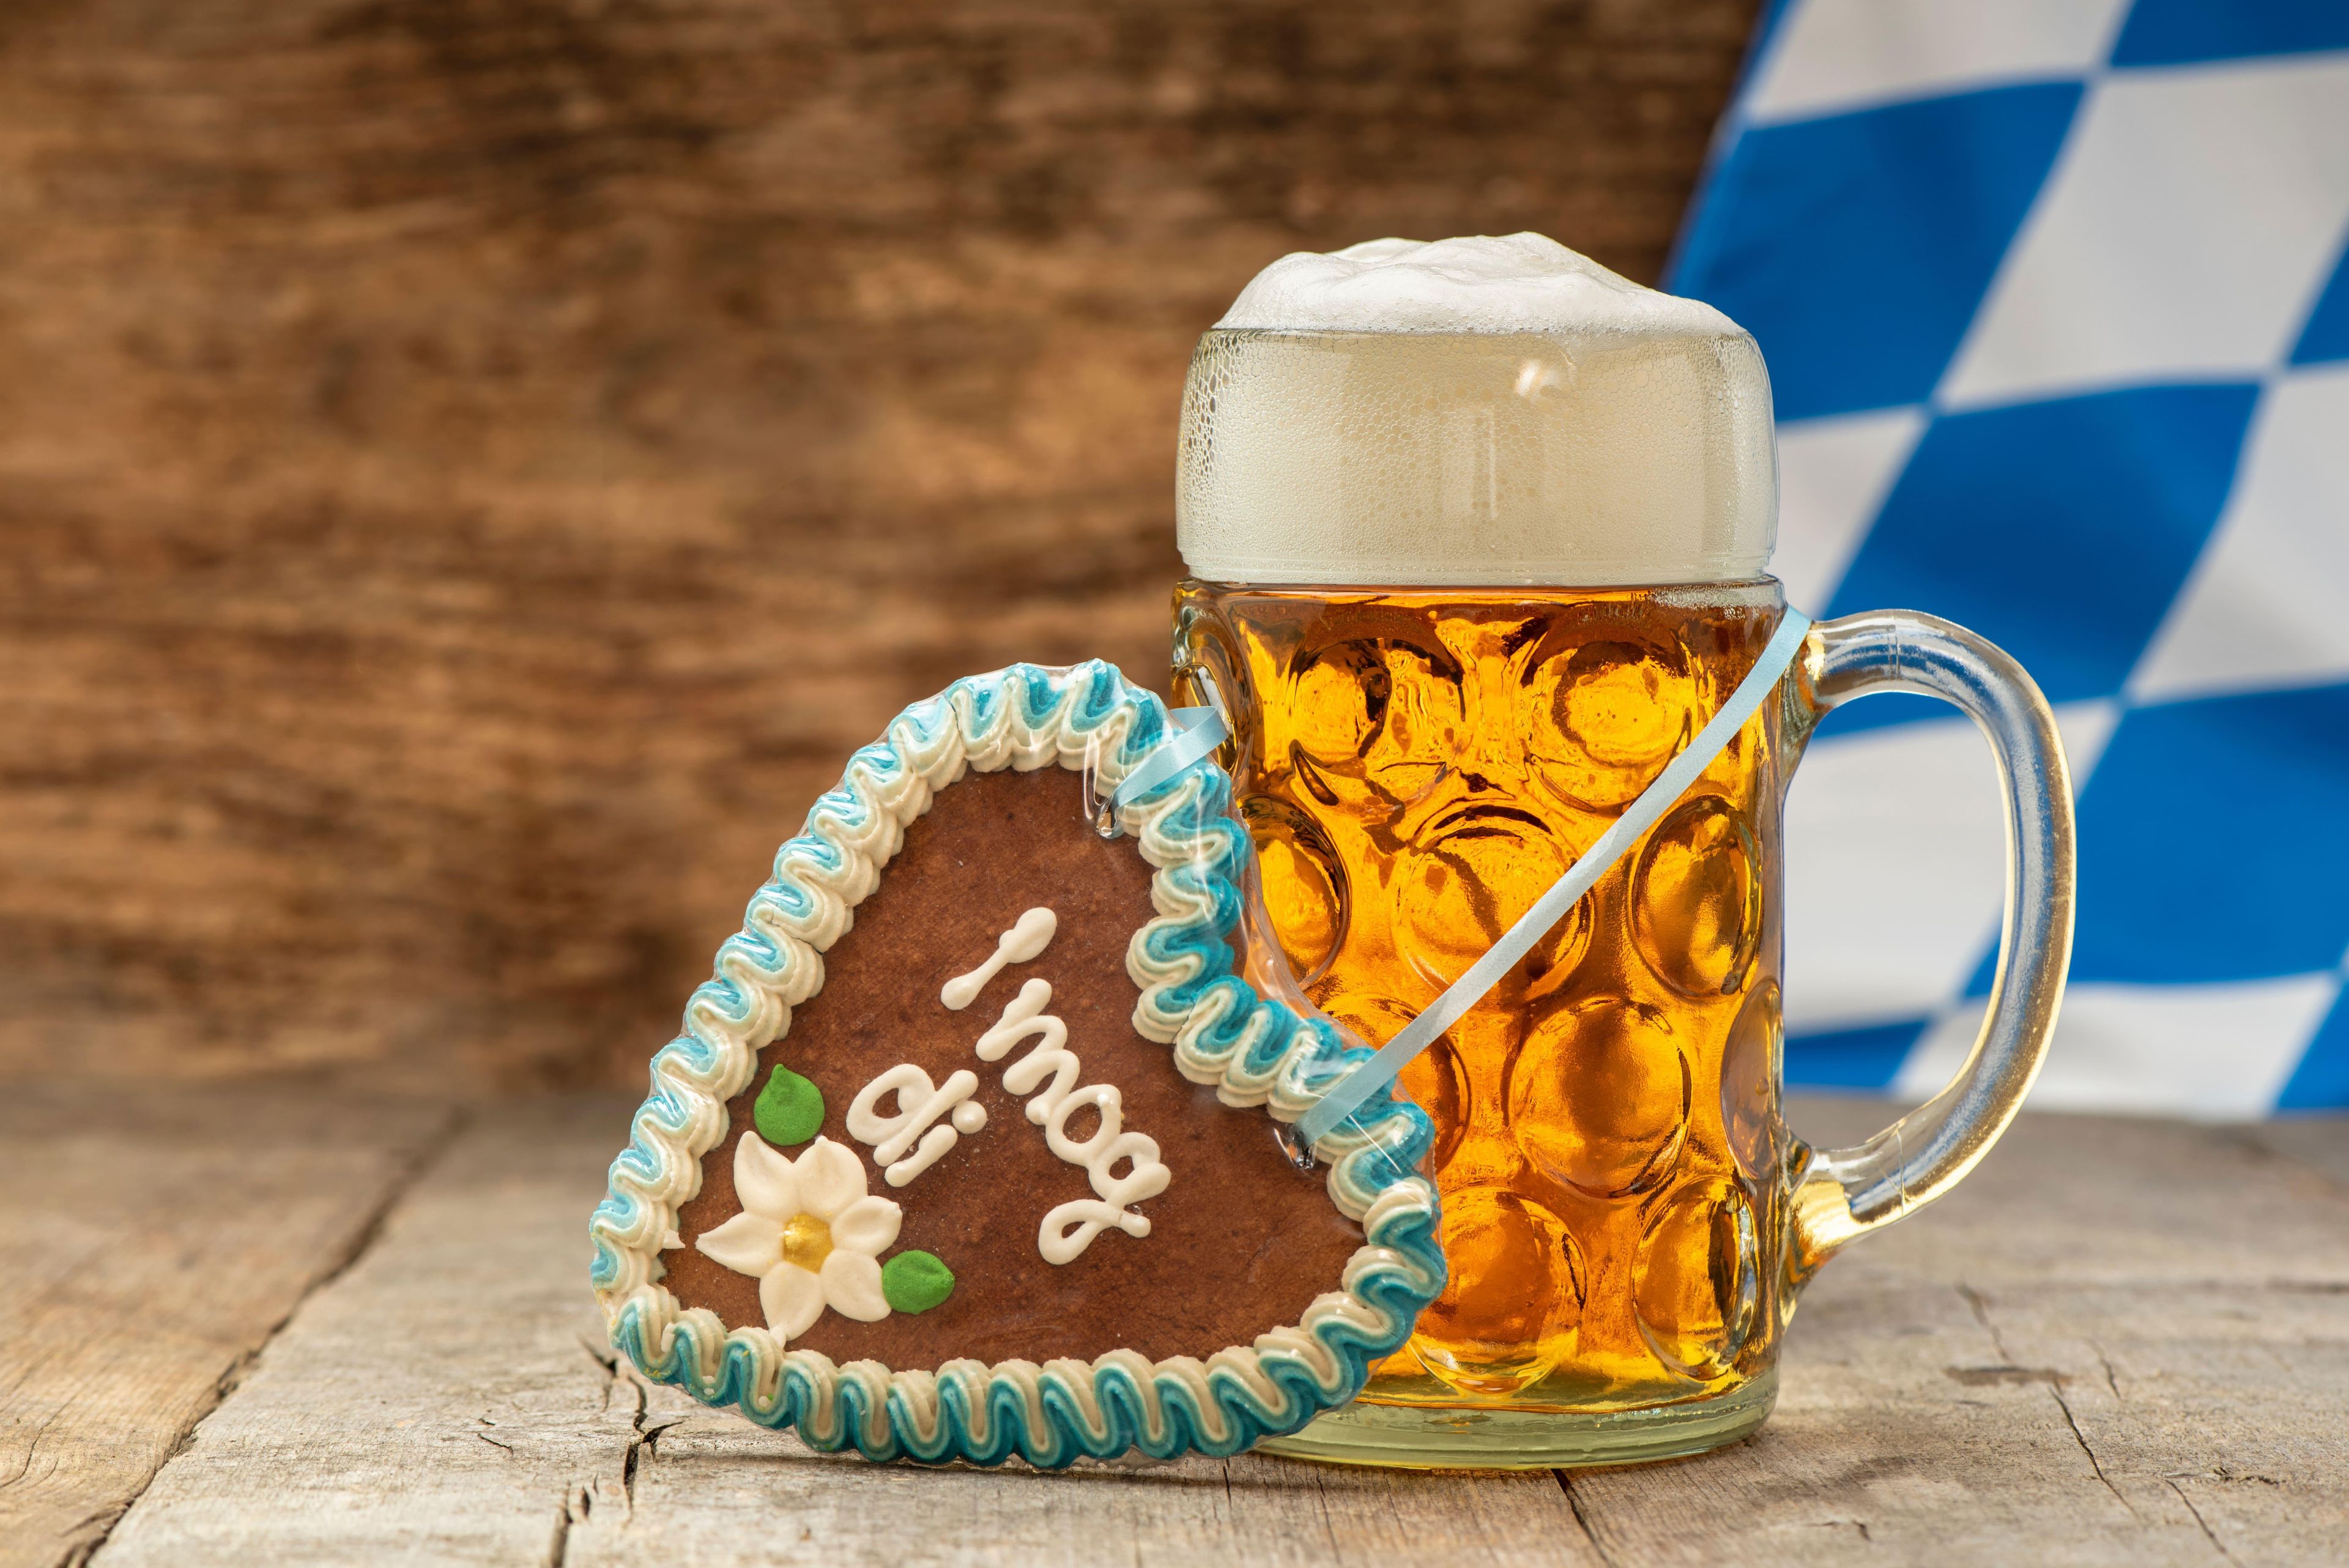 Boccale di birra con birra dietro il cuore di pan di zenzero davanti alla bandiera bavarese su pavimento di legno